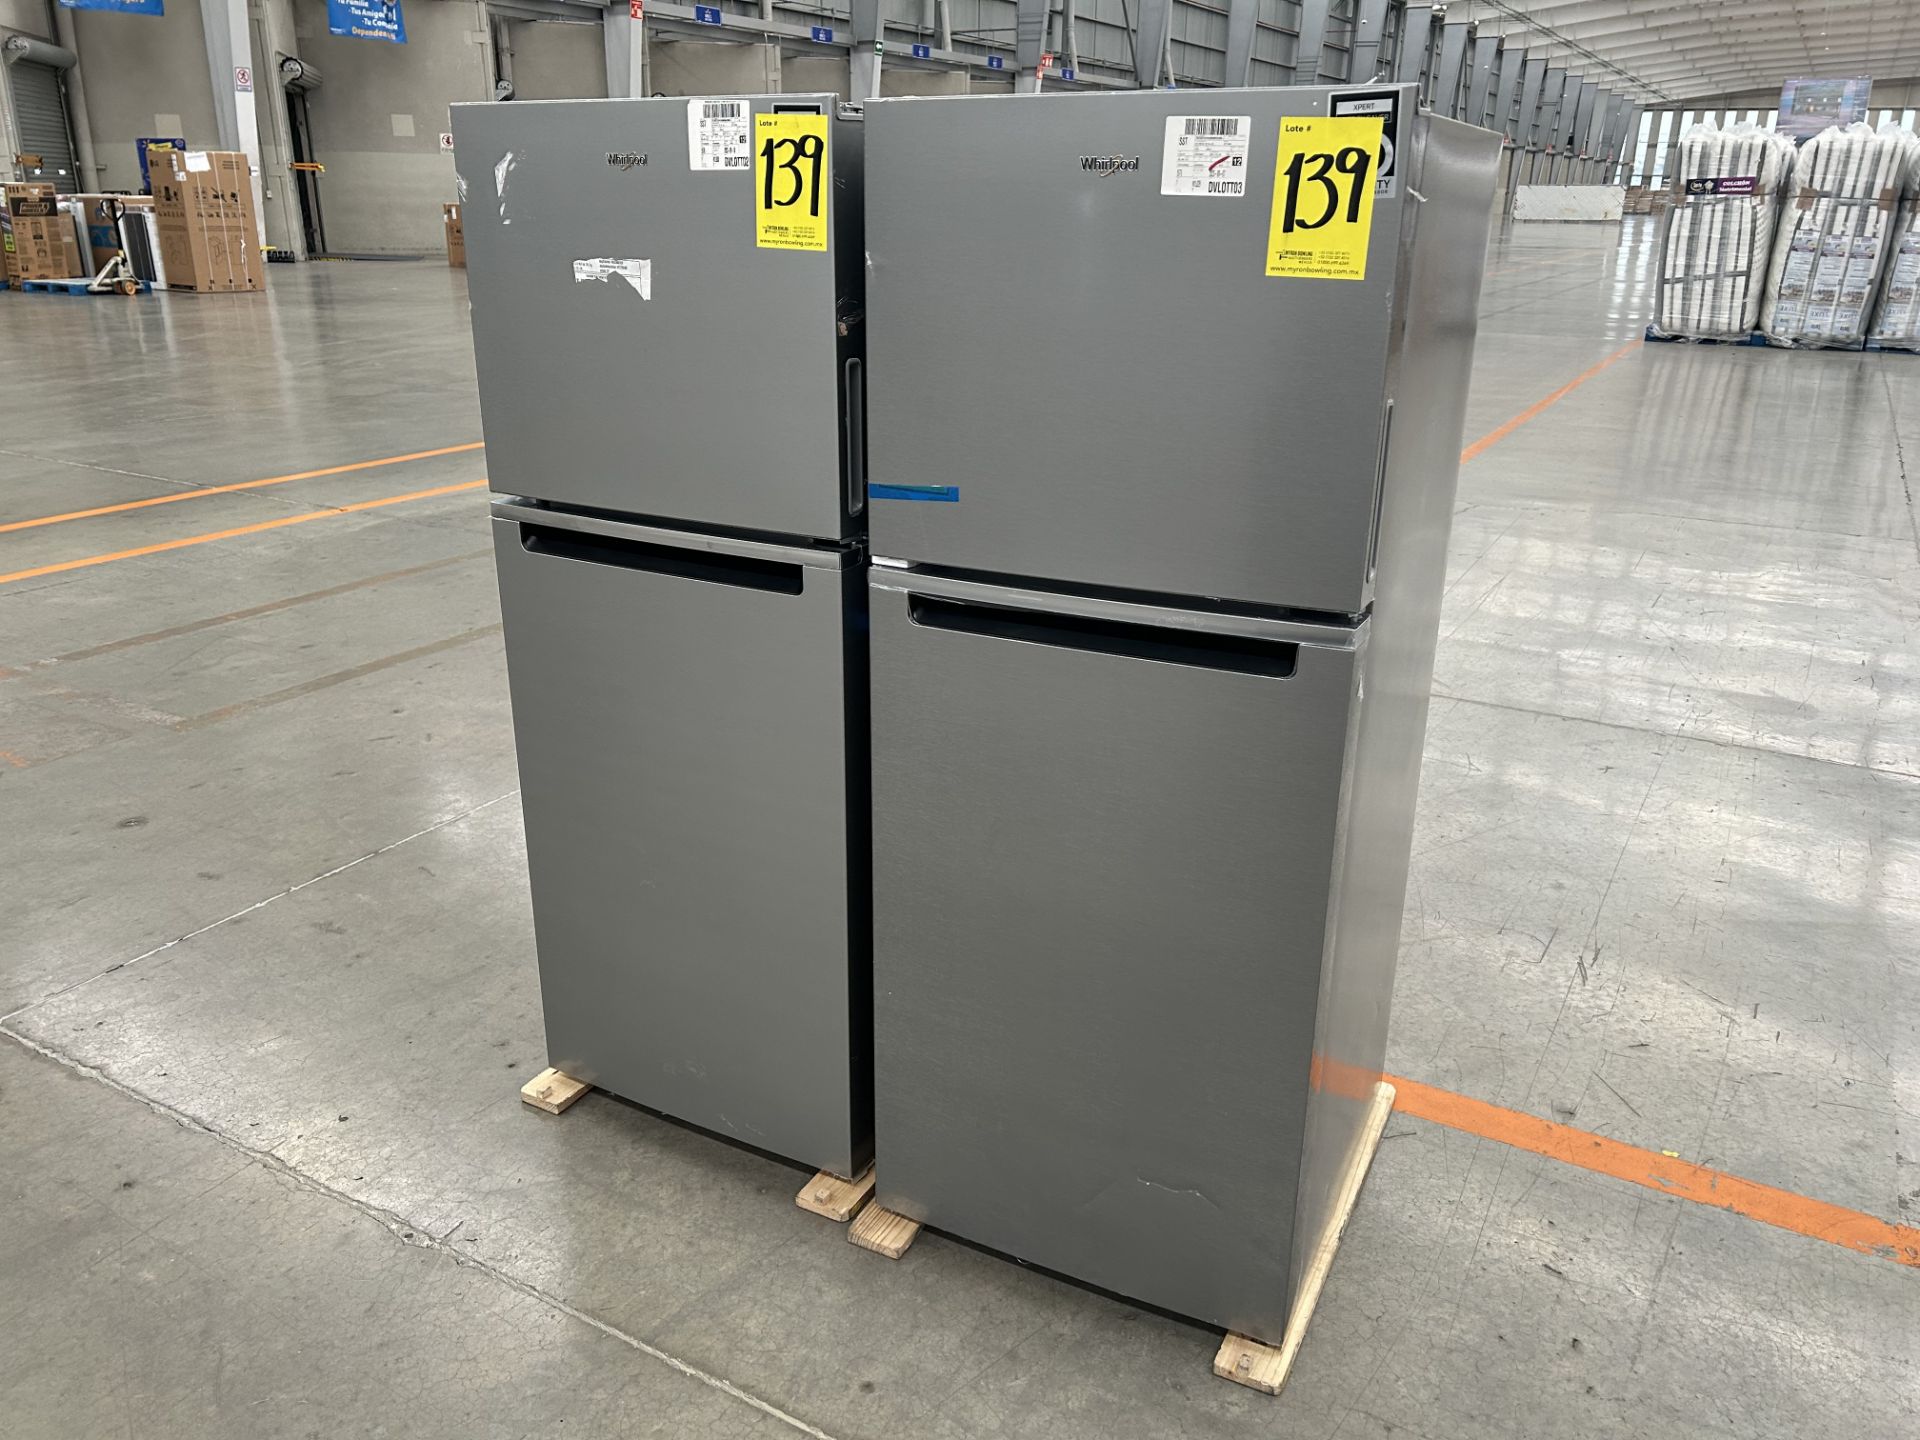 Lote de 2 refrigeradores contiene: 1 refrigerador Marca WHIRPOOL, Modelo WT1230K, Serie 90748, Colo - Image 2 of 6